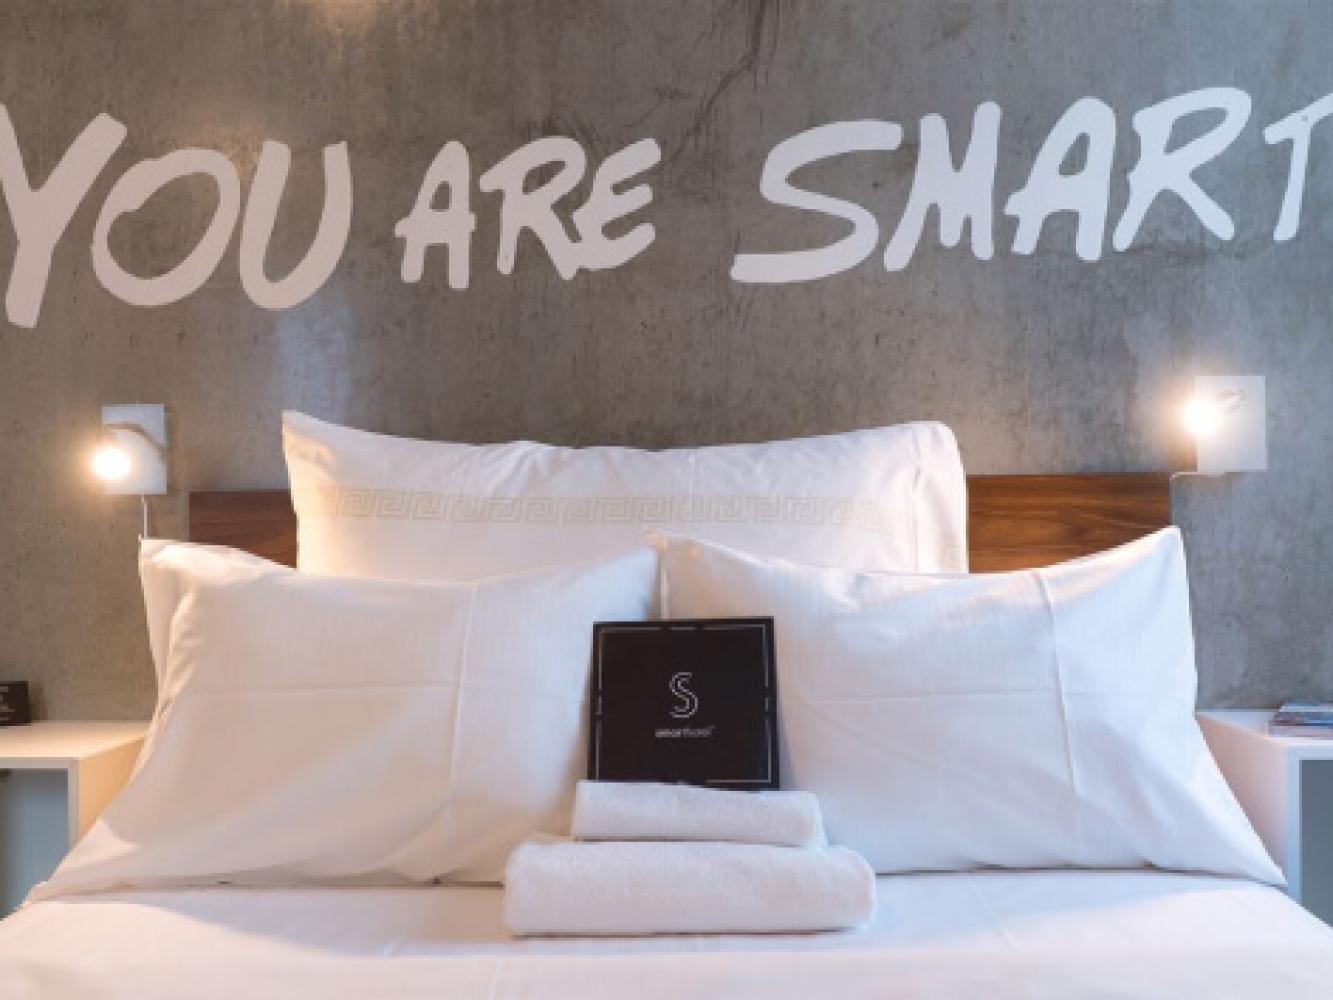 Seng i et hotellrom på Smarthotel. "Your are smart" står skrevet på veggen.